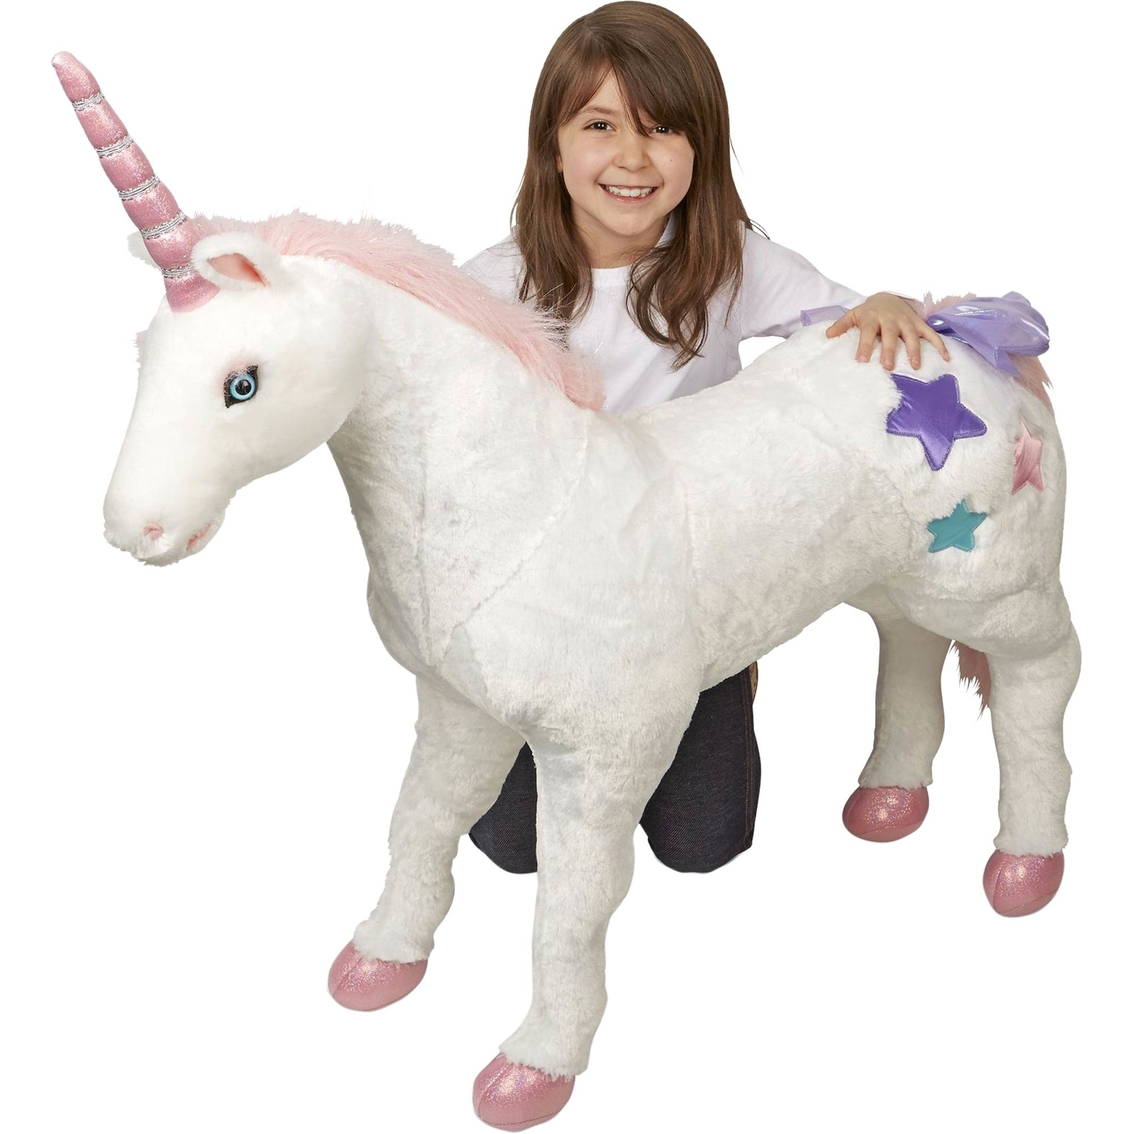 Melissa & Doug Plush Unicorn - Image 3 of 4